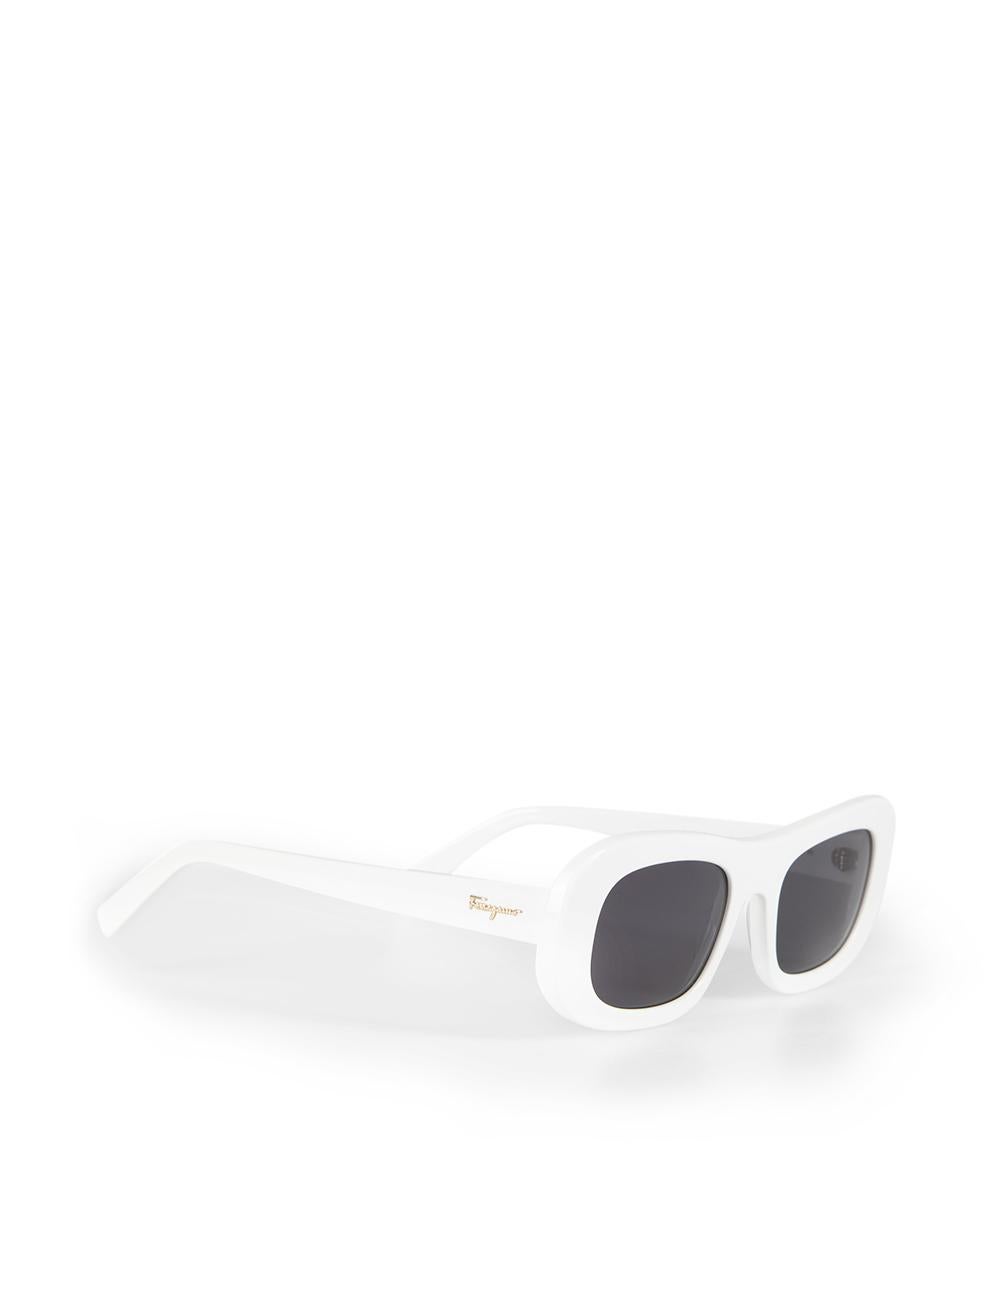 Salvatore Ferragamo White Rectangle Frame Sunglasses In New Condition For Sale In London, GB